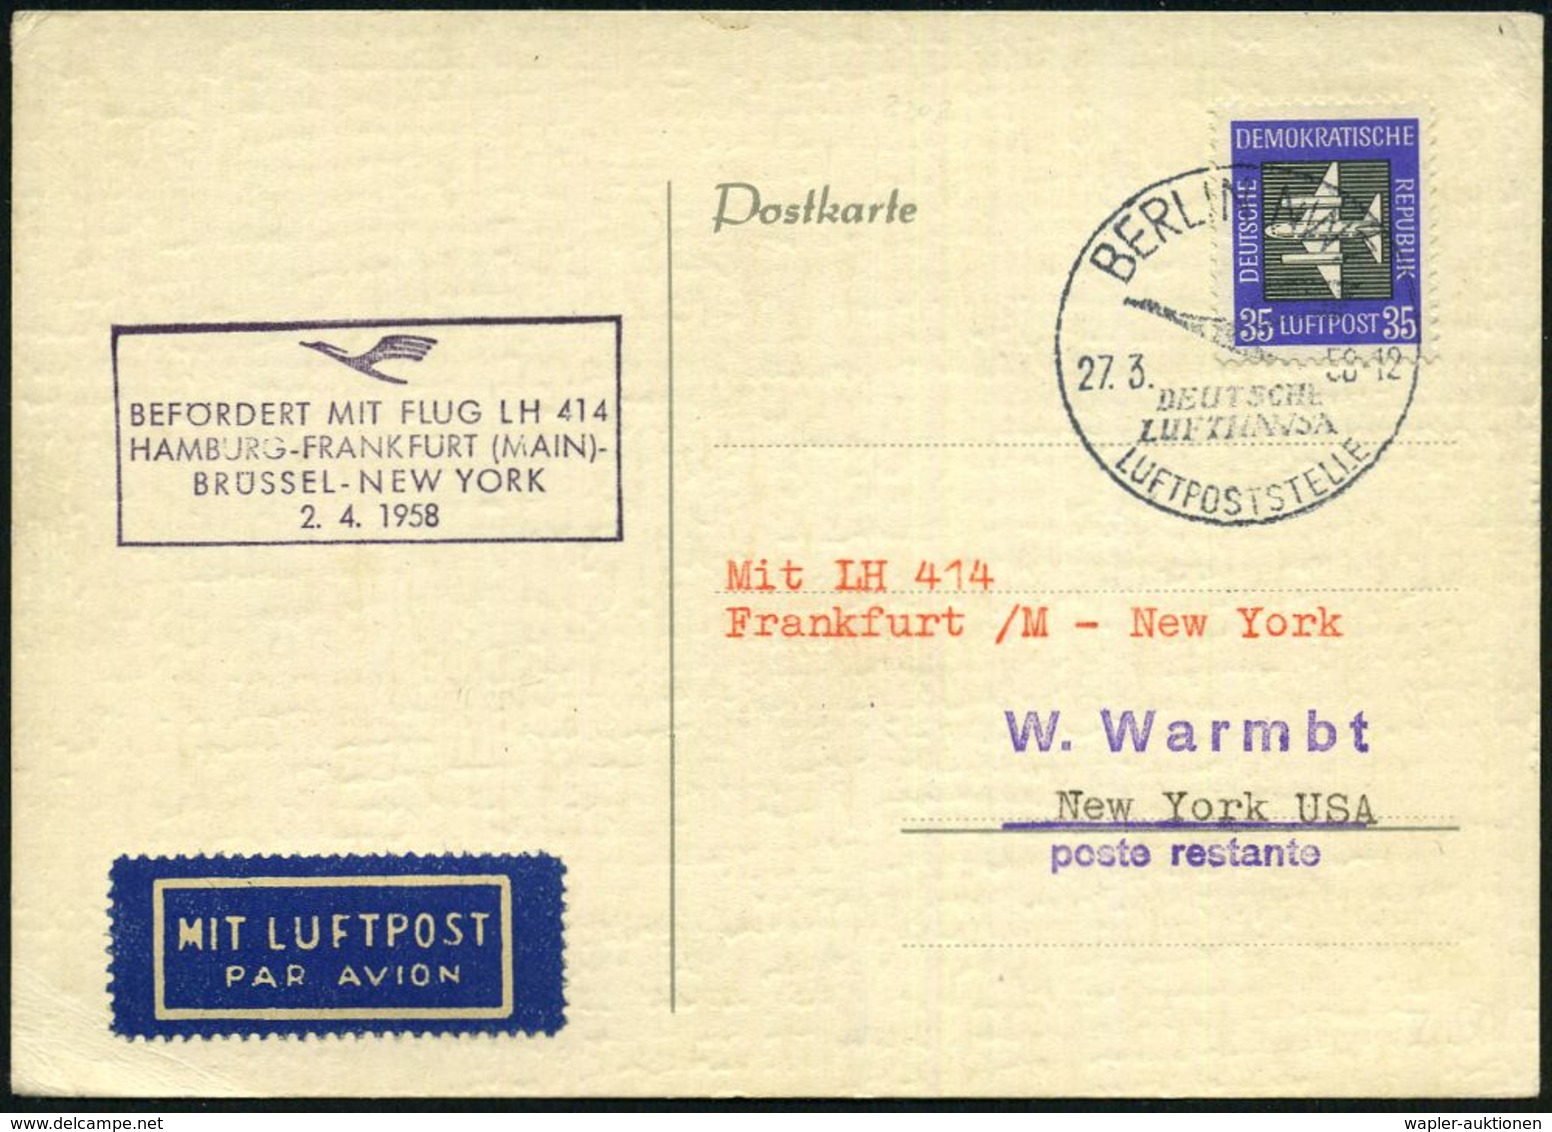 BERLIN NW 7/ DEUTSCHE/ LUFTHANSA/ LUFTPOSTSTELLE 1958 (27.3.) HWSt Auf EF DDR 35 Pf. Flp. (Mi.611 EF) + Viol. HdN: BEFÖR - Altri (Aria)